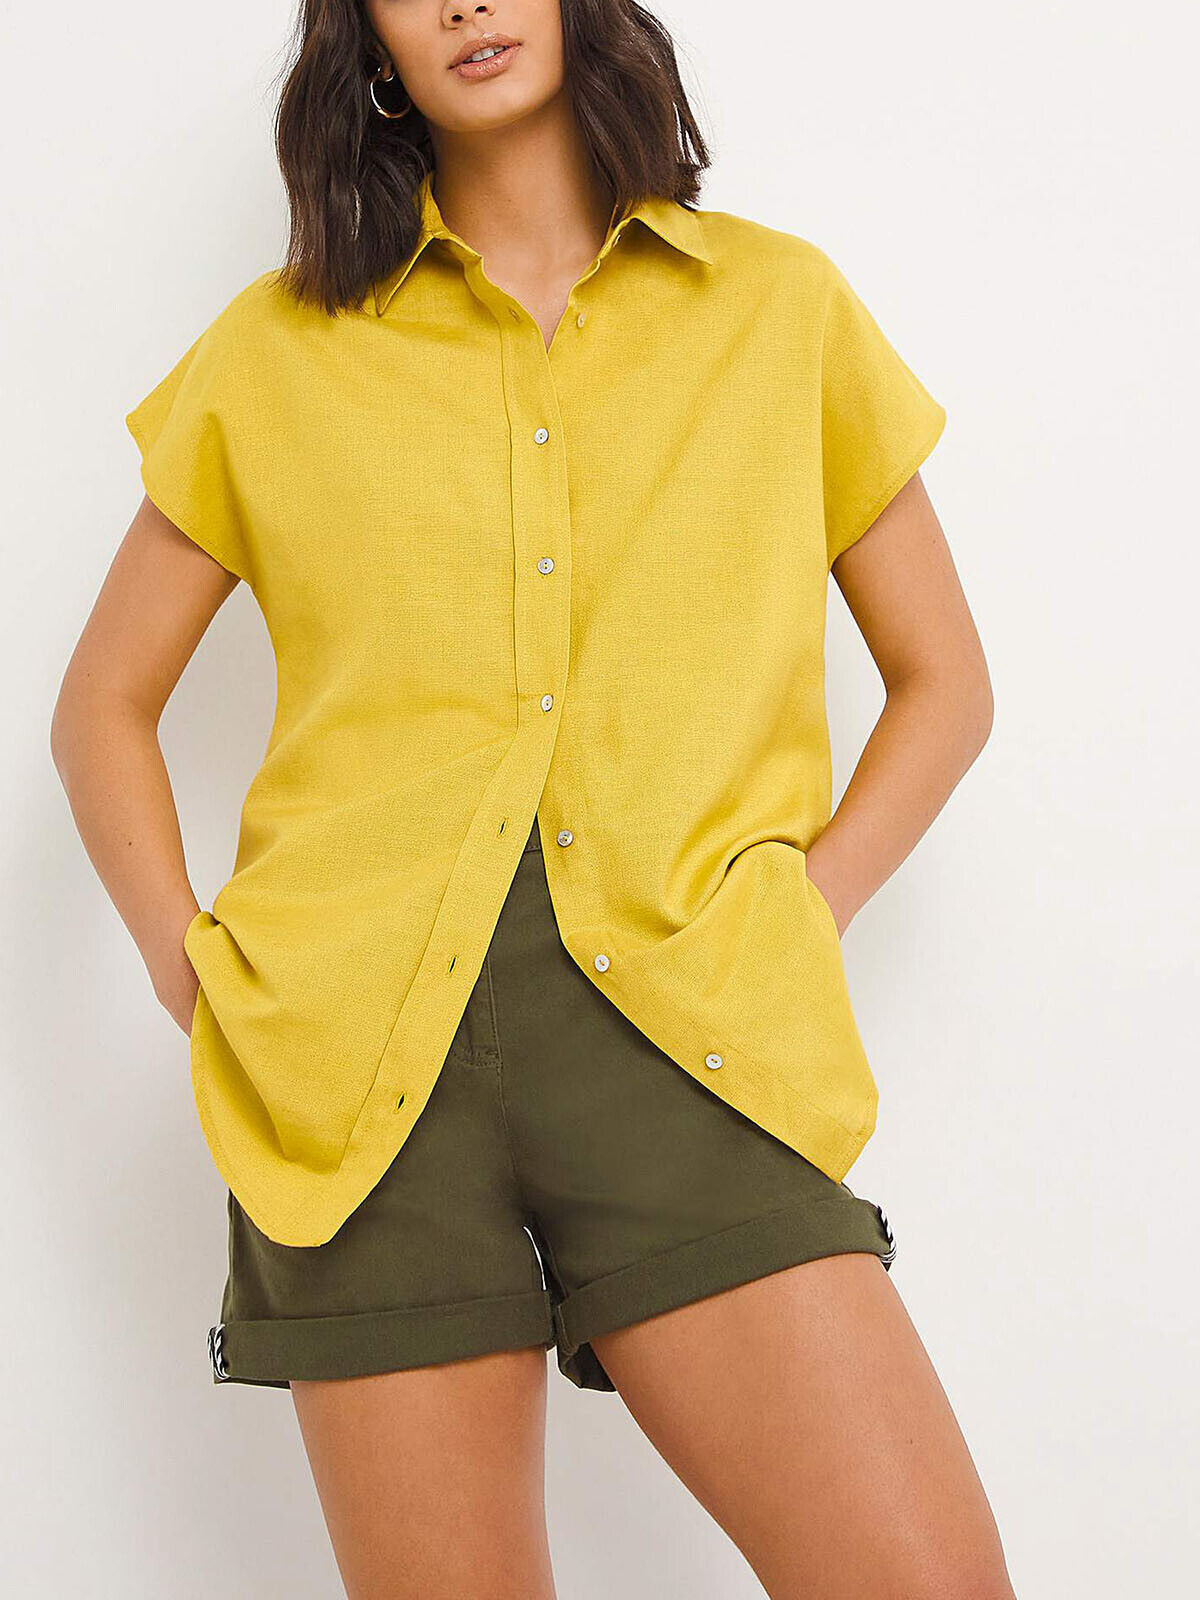 JD Williams Chartreuse Short Sleeve Linen Shirt Sizes 14, 18, 20, 24, 26, 28, 30